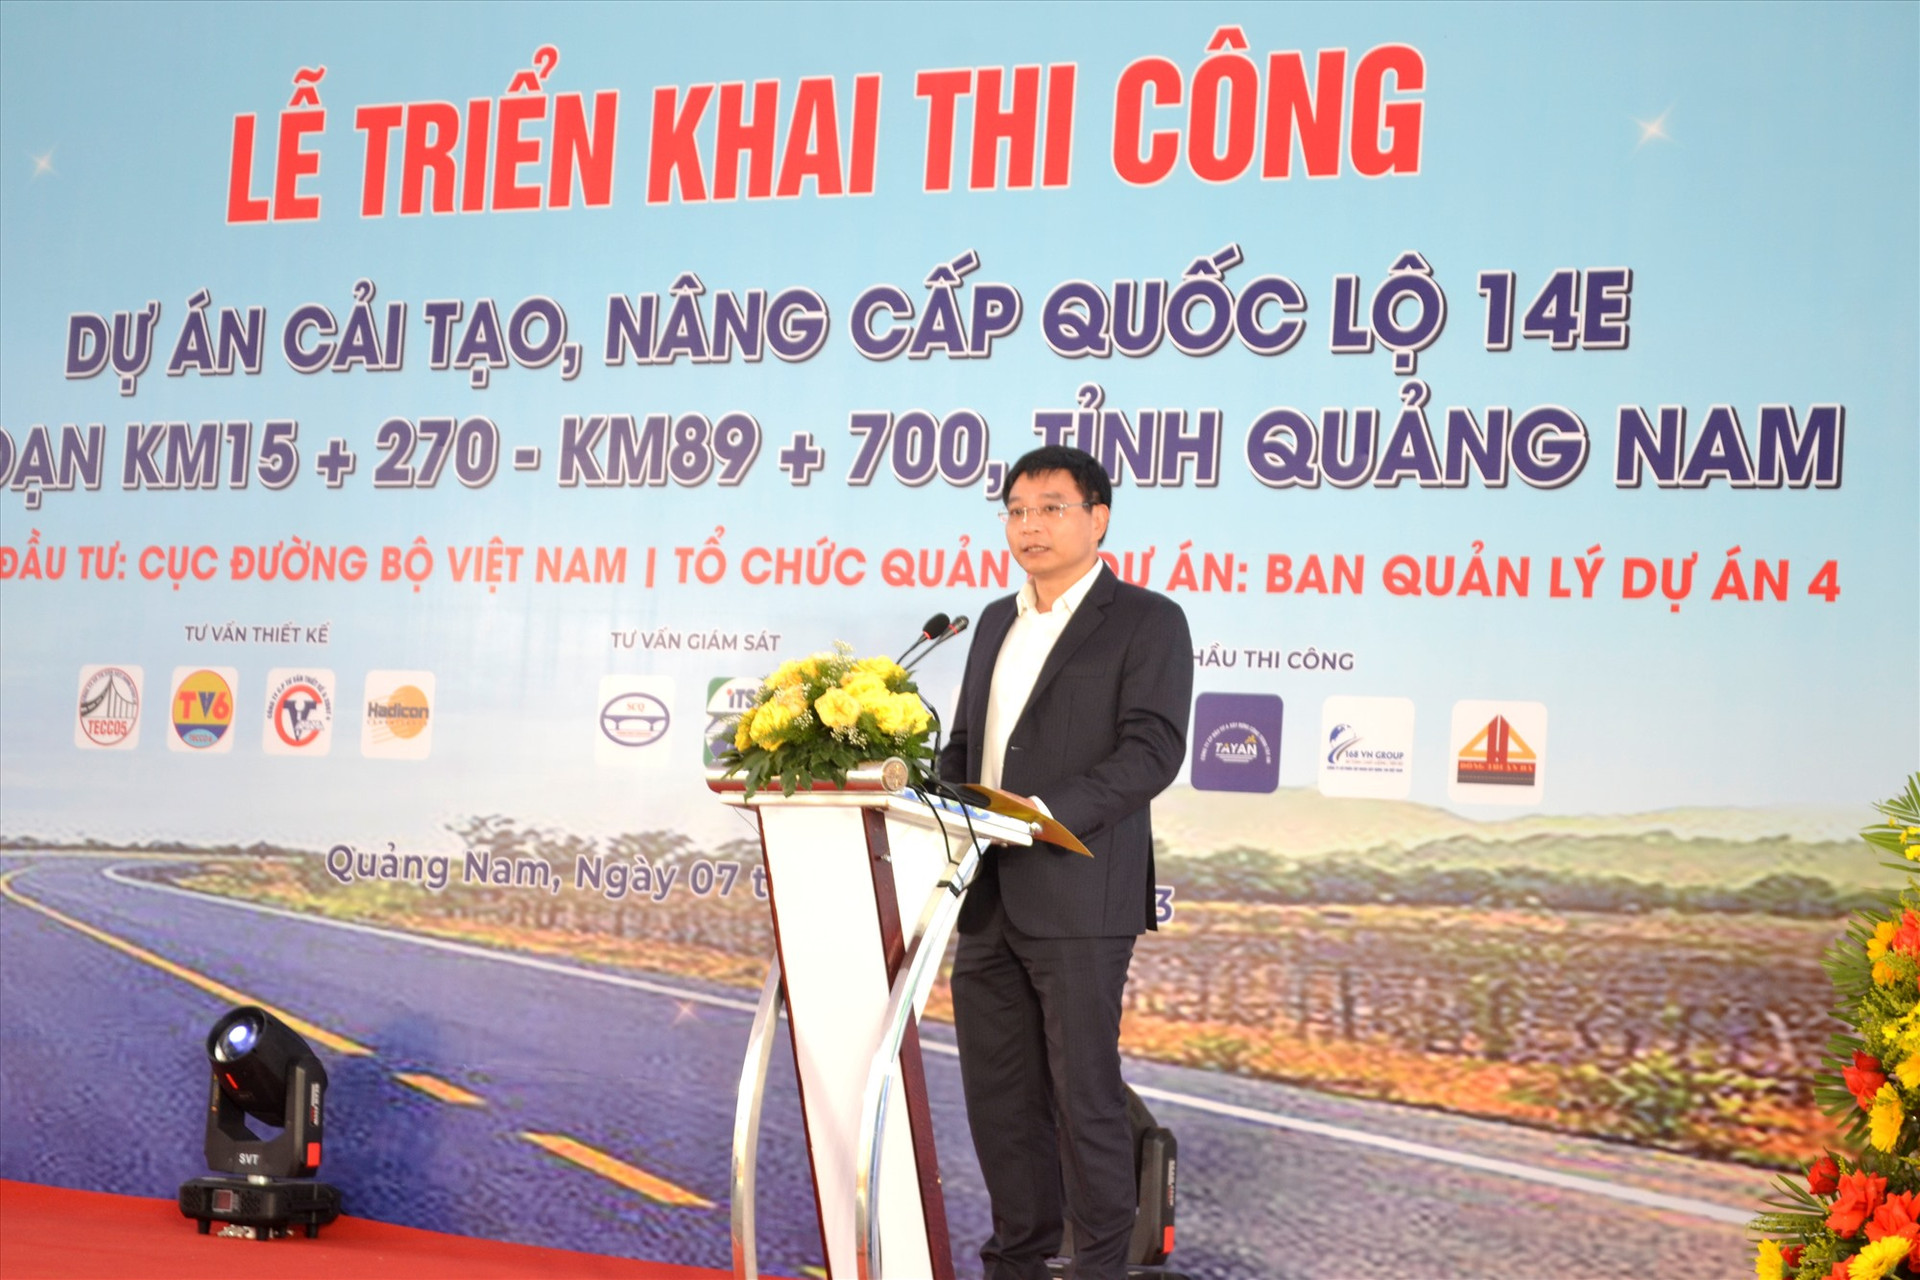 Bộ trưởng Bộ GTVT Nguyễn Văn Thắng phát biểu tại lễ triển khai thi công dự án cải tạo, nâng cấp QL14E. Ảnh: C.T